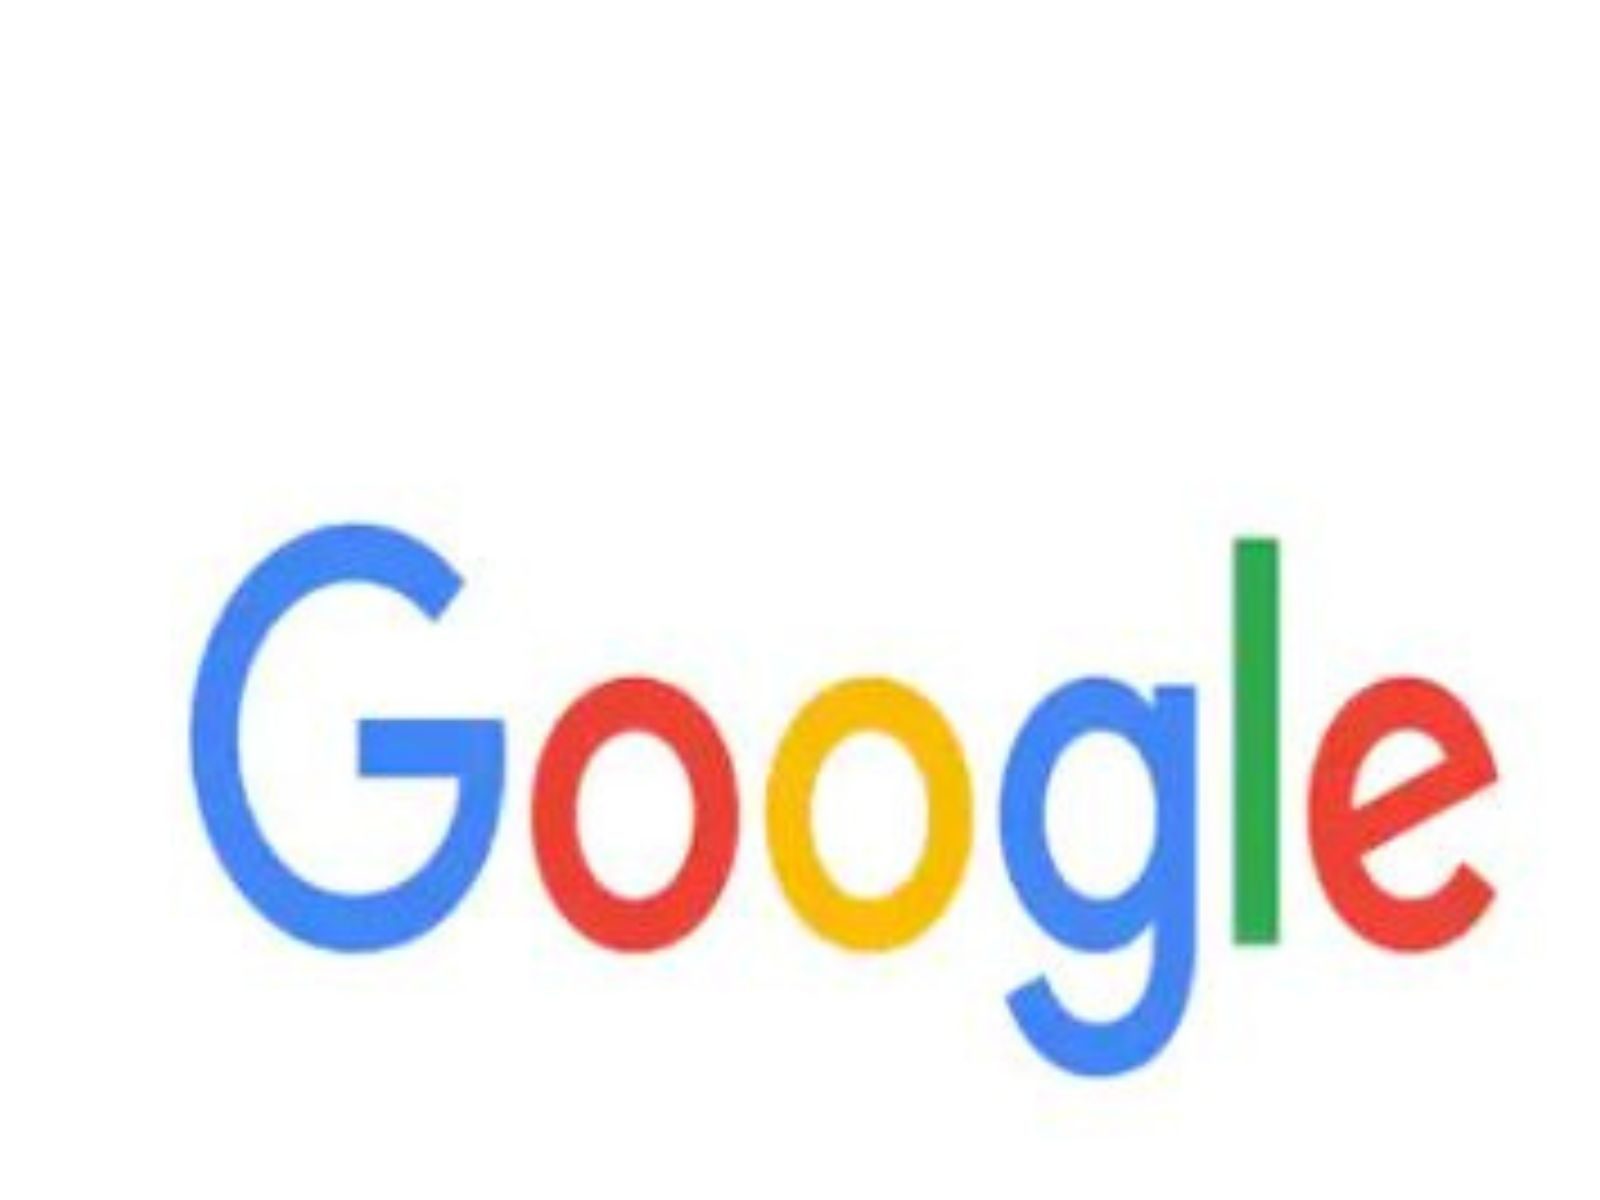  ਭਾਰਤੀ ਮੁਕਾਬਲੇਬਾਜ਼ੀ ਕਮਿਸ਼ਨ ਨੇ Google ਨੂੰ ਲਾਇਆ 936.44 ਕਰੋੜ ਦਾ ਜੁਰਮਾਨਾ  (file photo)